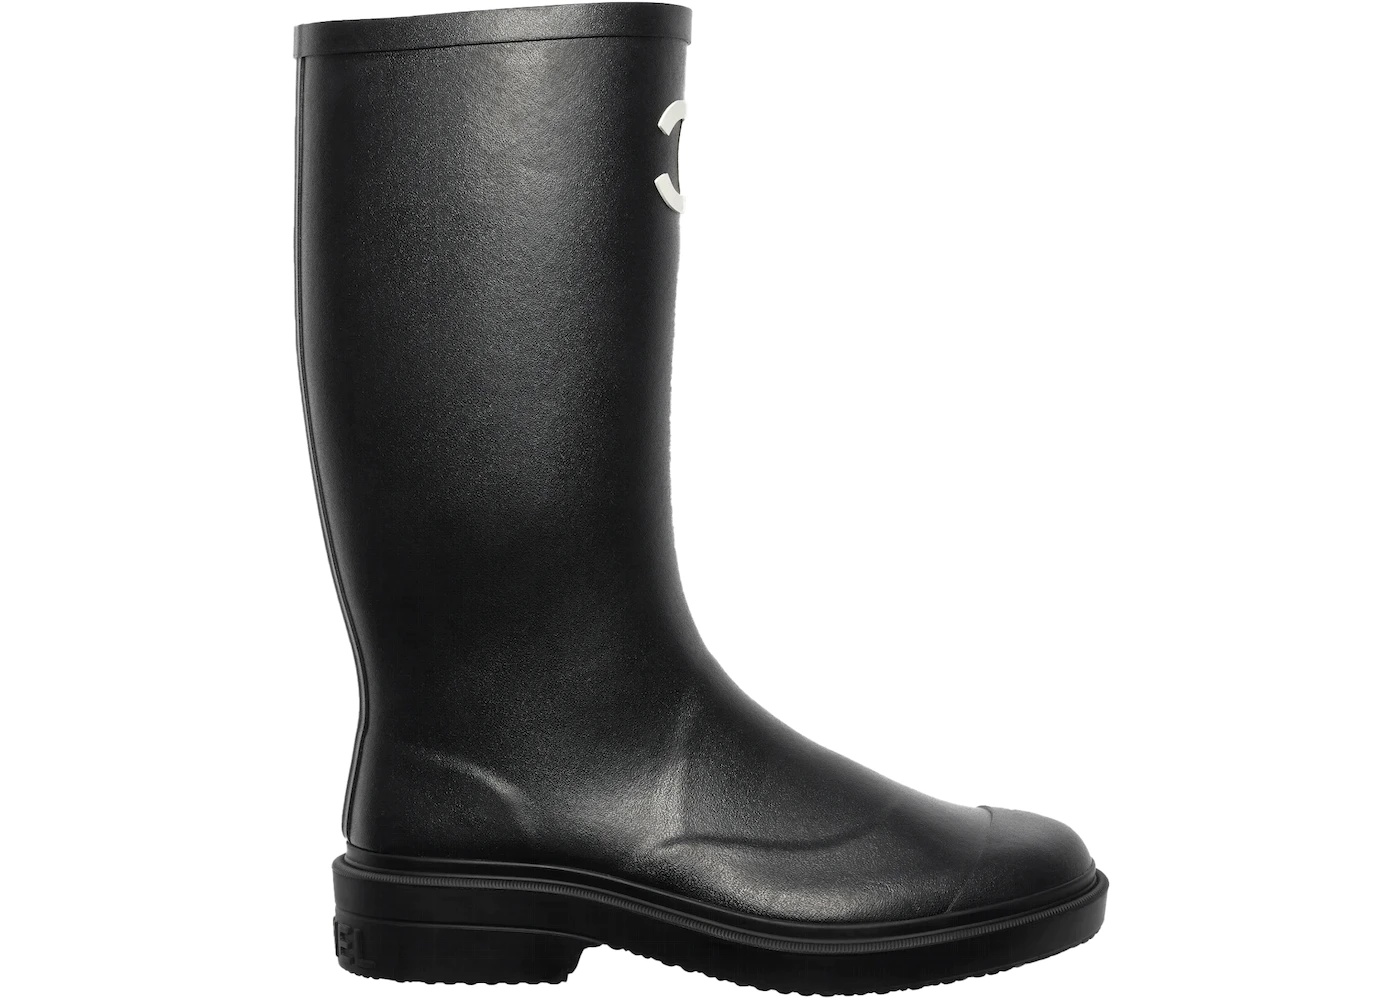 Chanel Rubber Rain Boots Black - 1